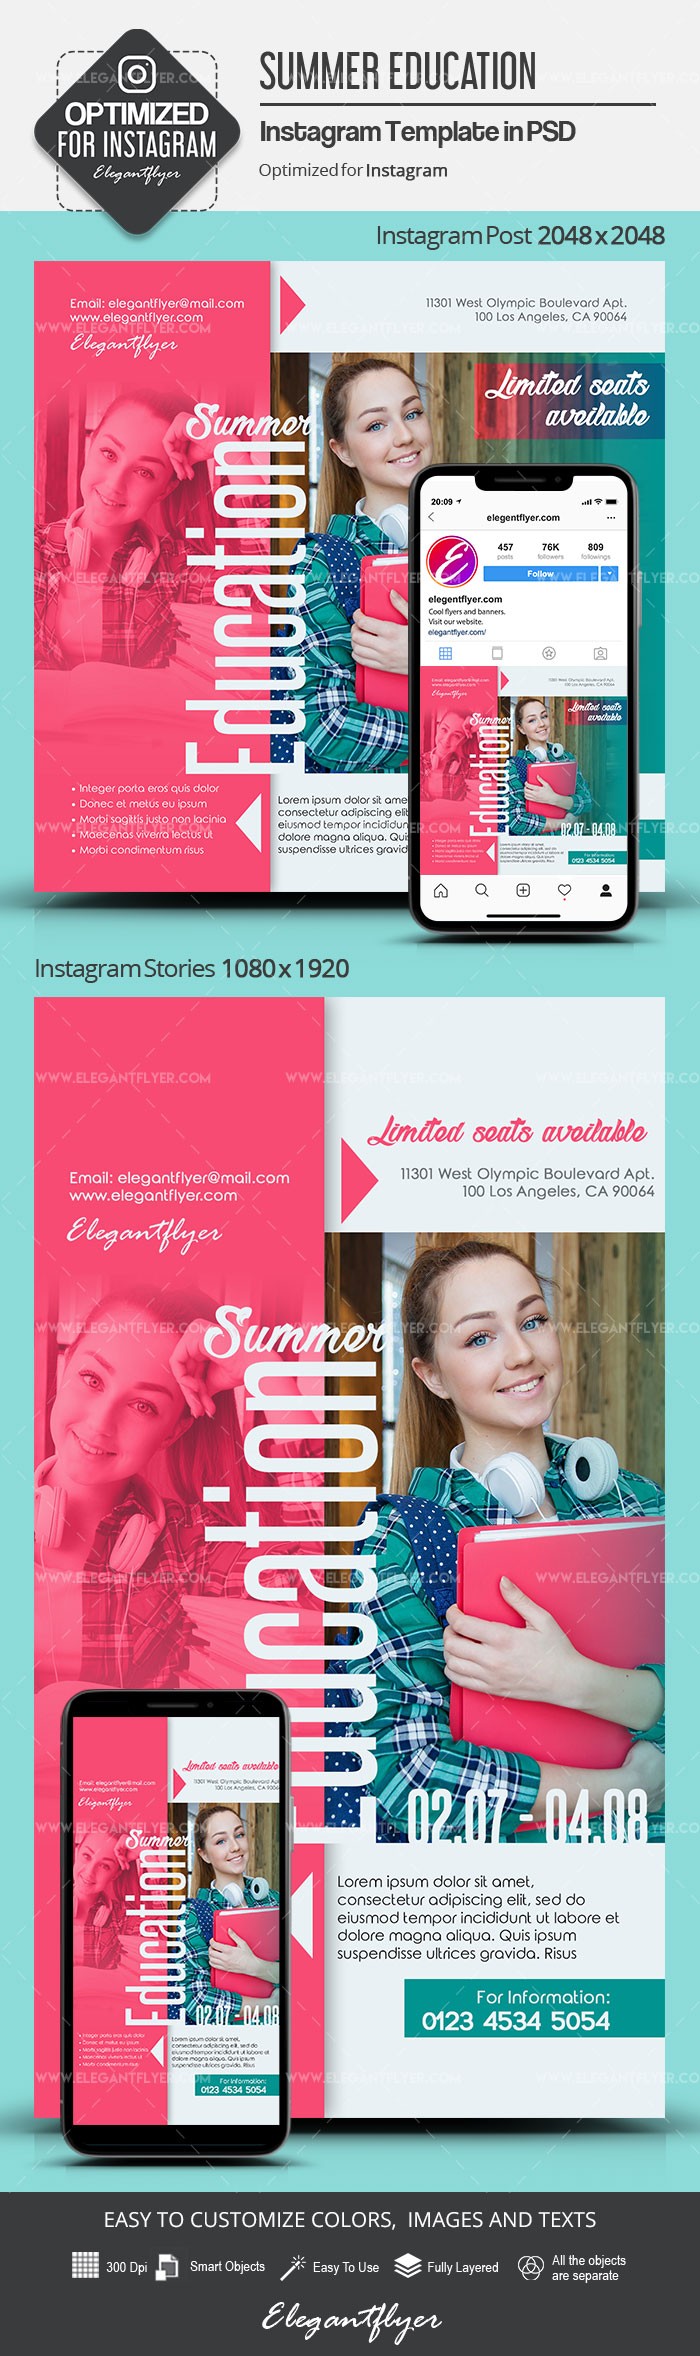 Letnie Wykształcenie Instagram by ElegantFlyer